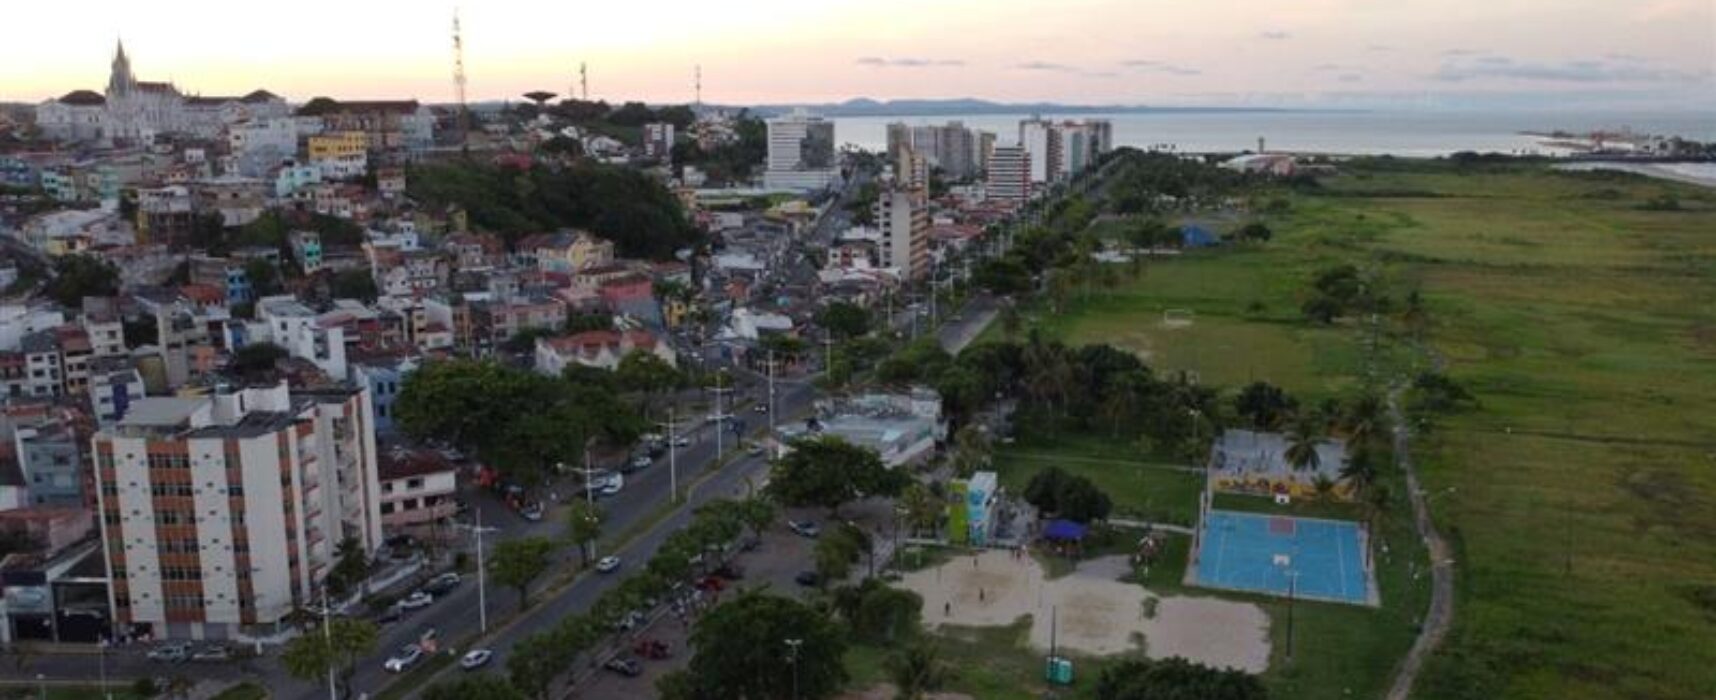 Comissão apresentará relatório final de urbanização da Av. Soares Lopes, em audiência pública na Câmara de Vereadores de Ilhéus